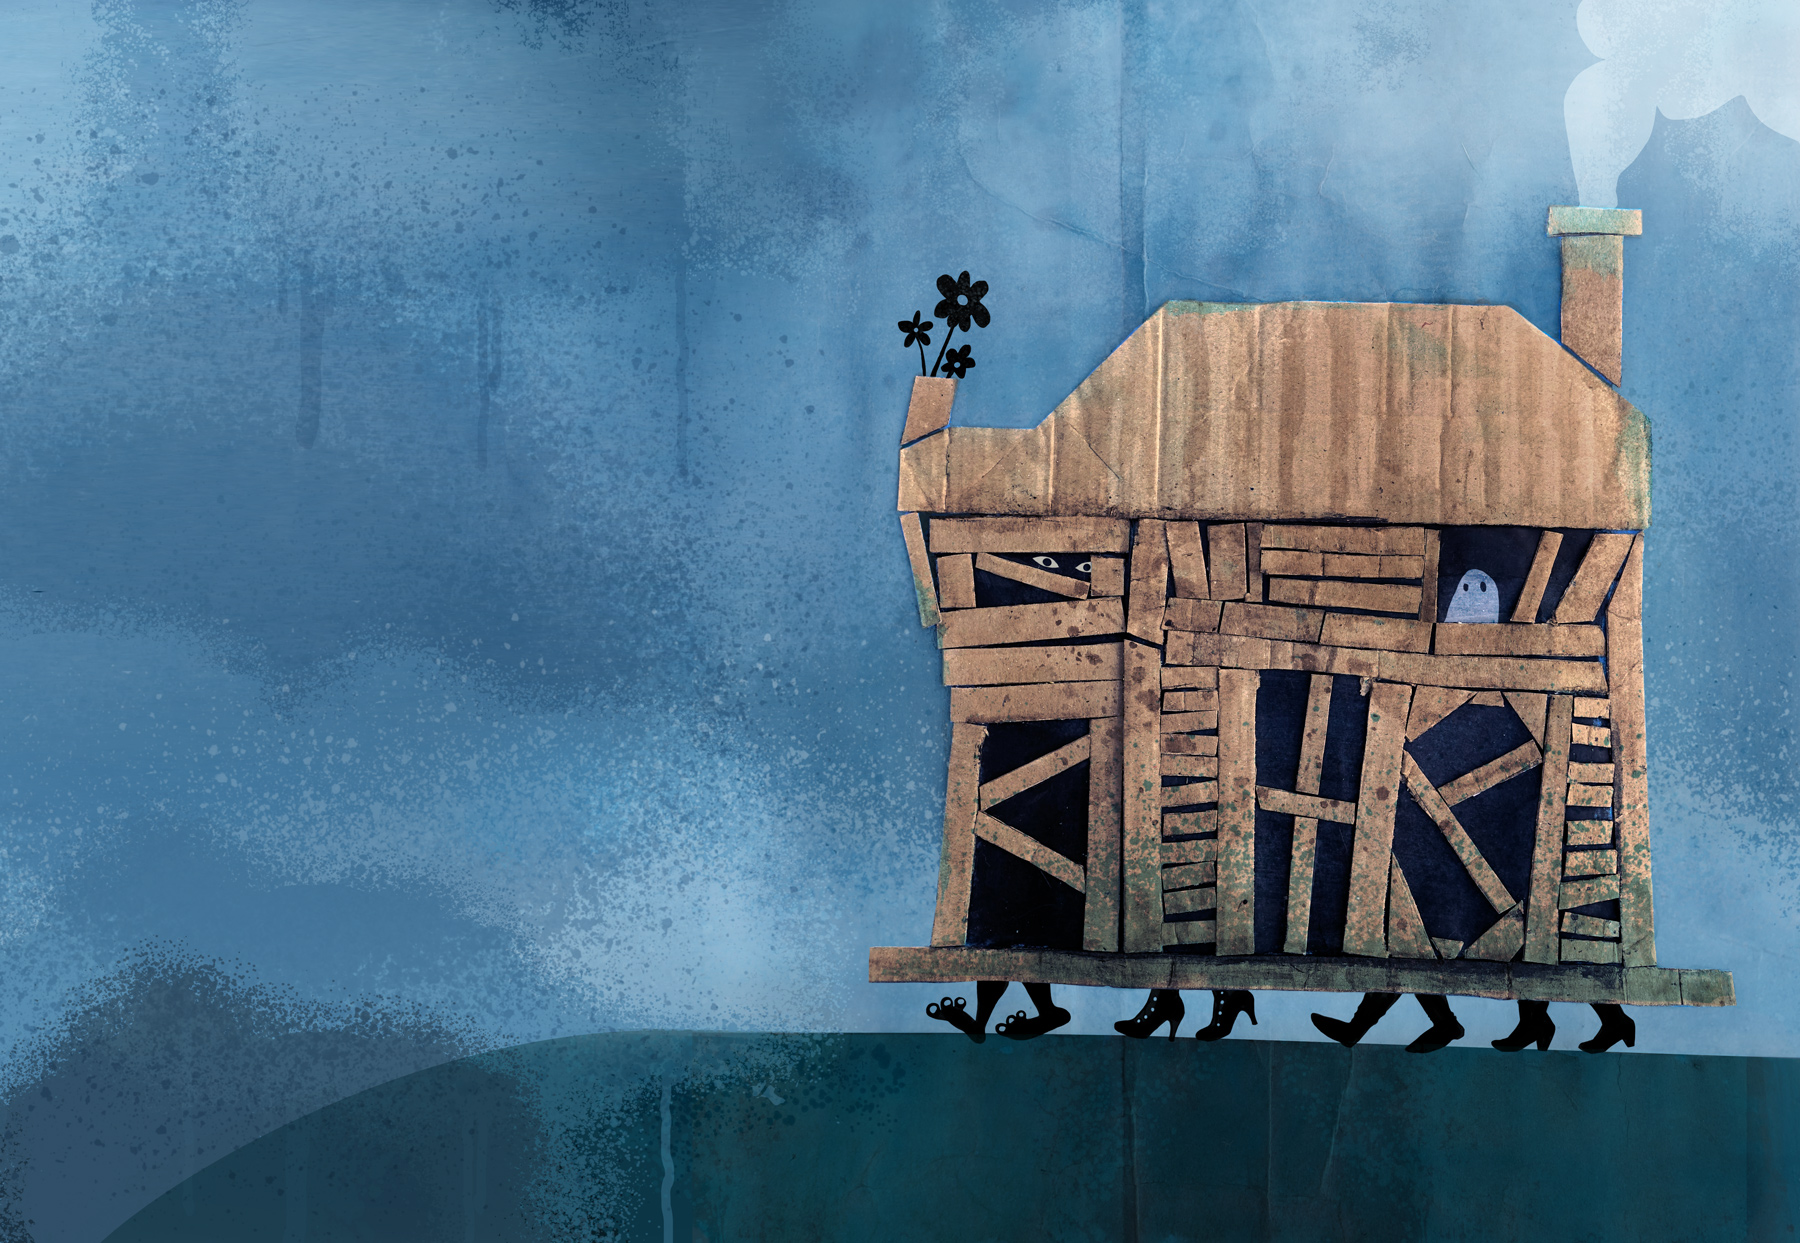 Un dibujo de una casa de madera medio rota con los pies de cuatro personas que se asoman por debajo y hacen que la casa se desplace y van hacia el precipicio